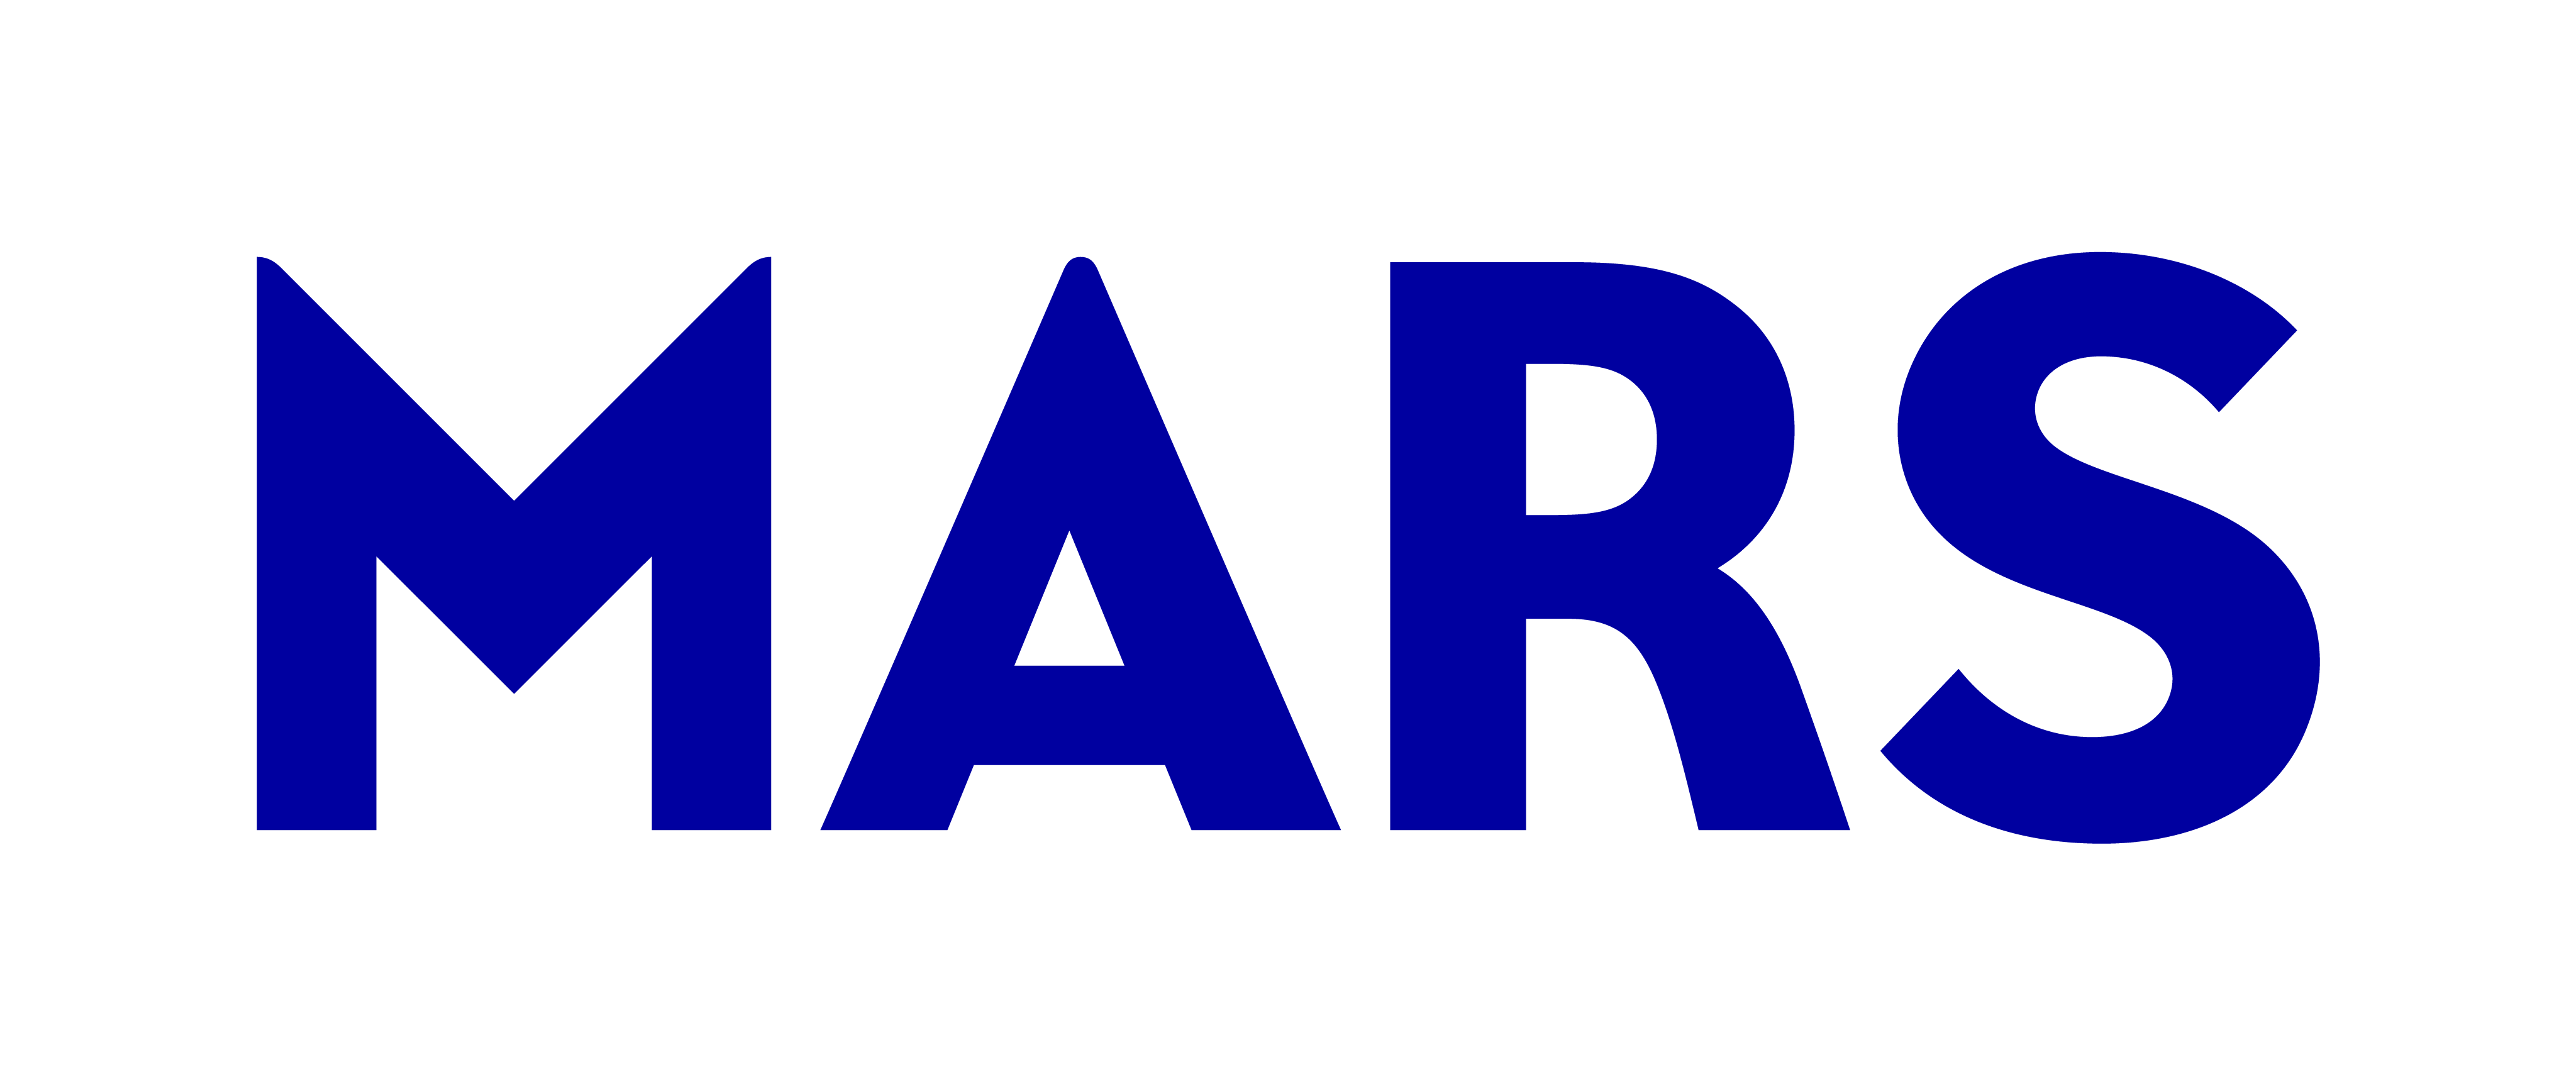 Mars Wordmark RGB Blue